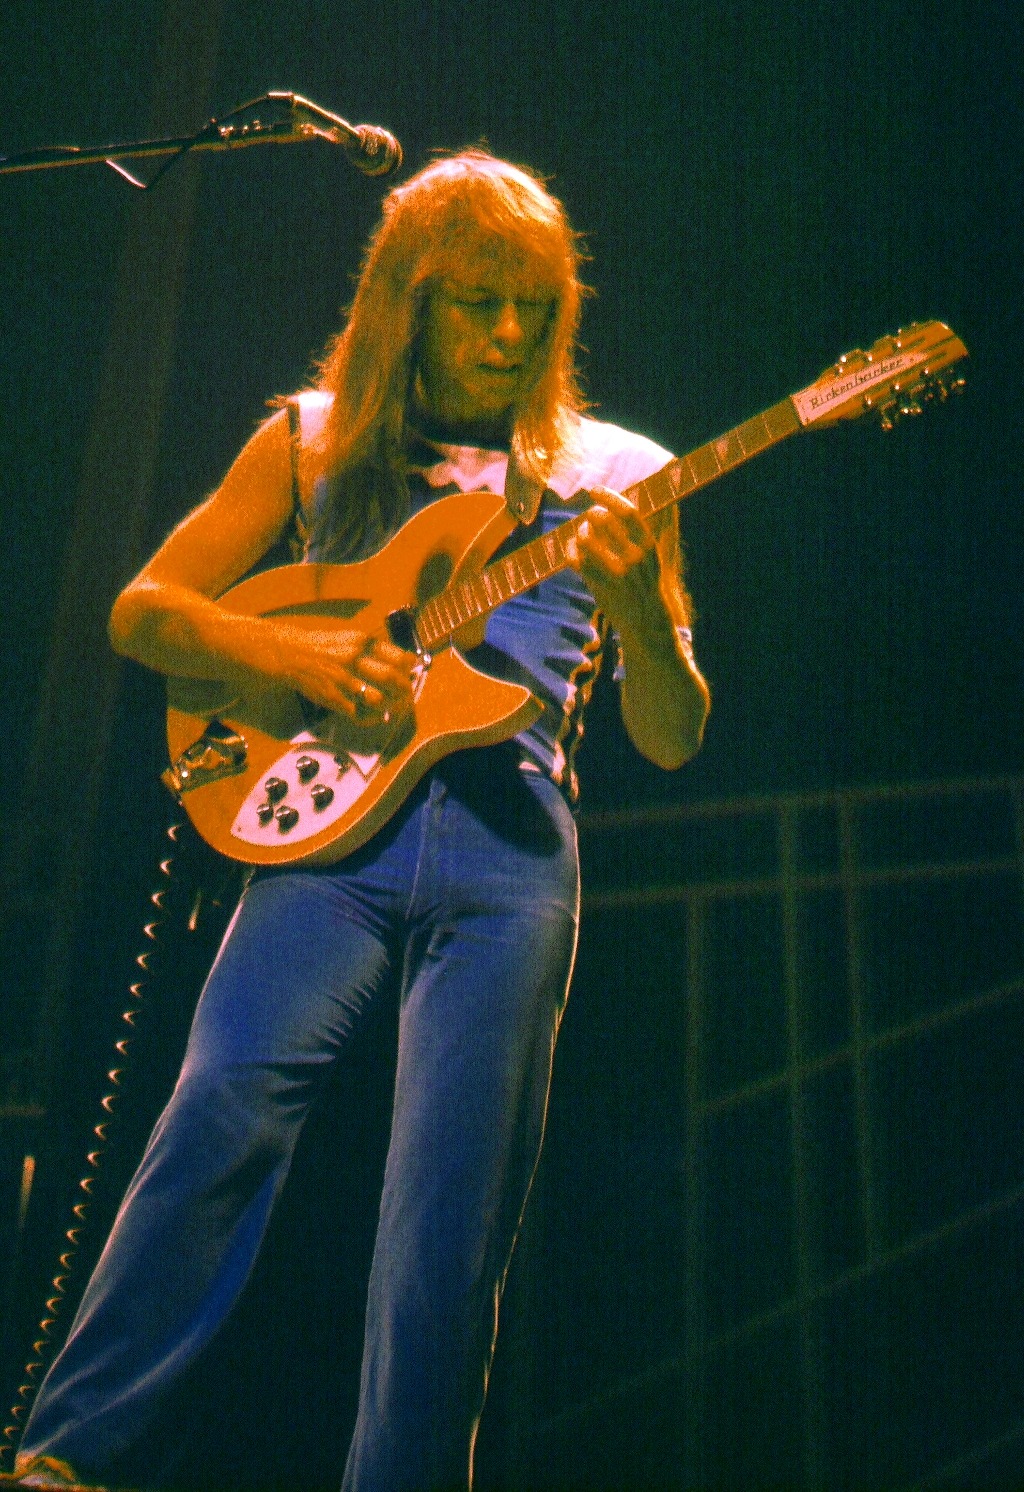 Steve Howe in 1977